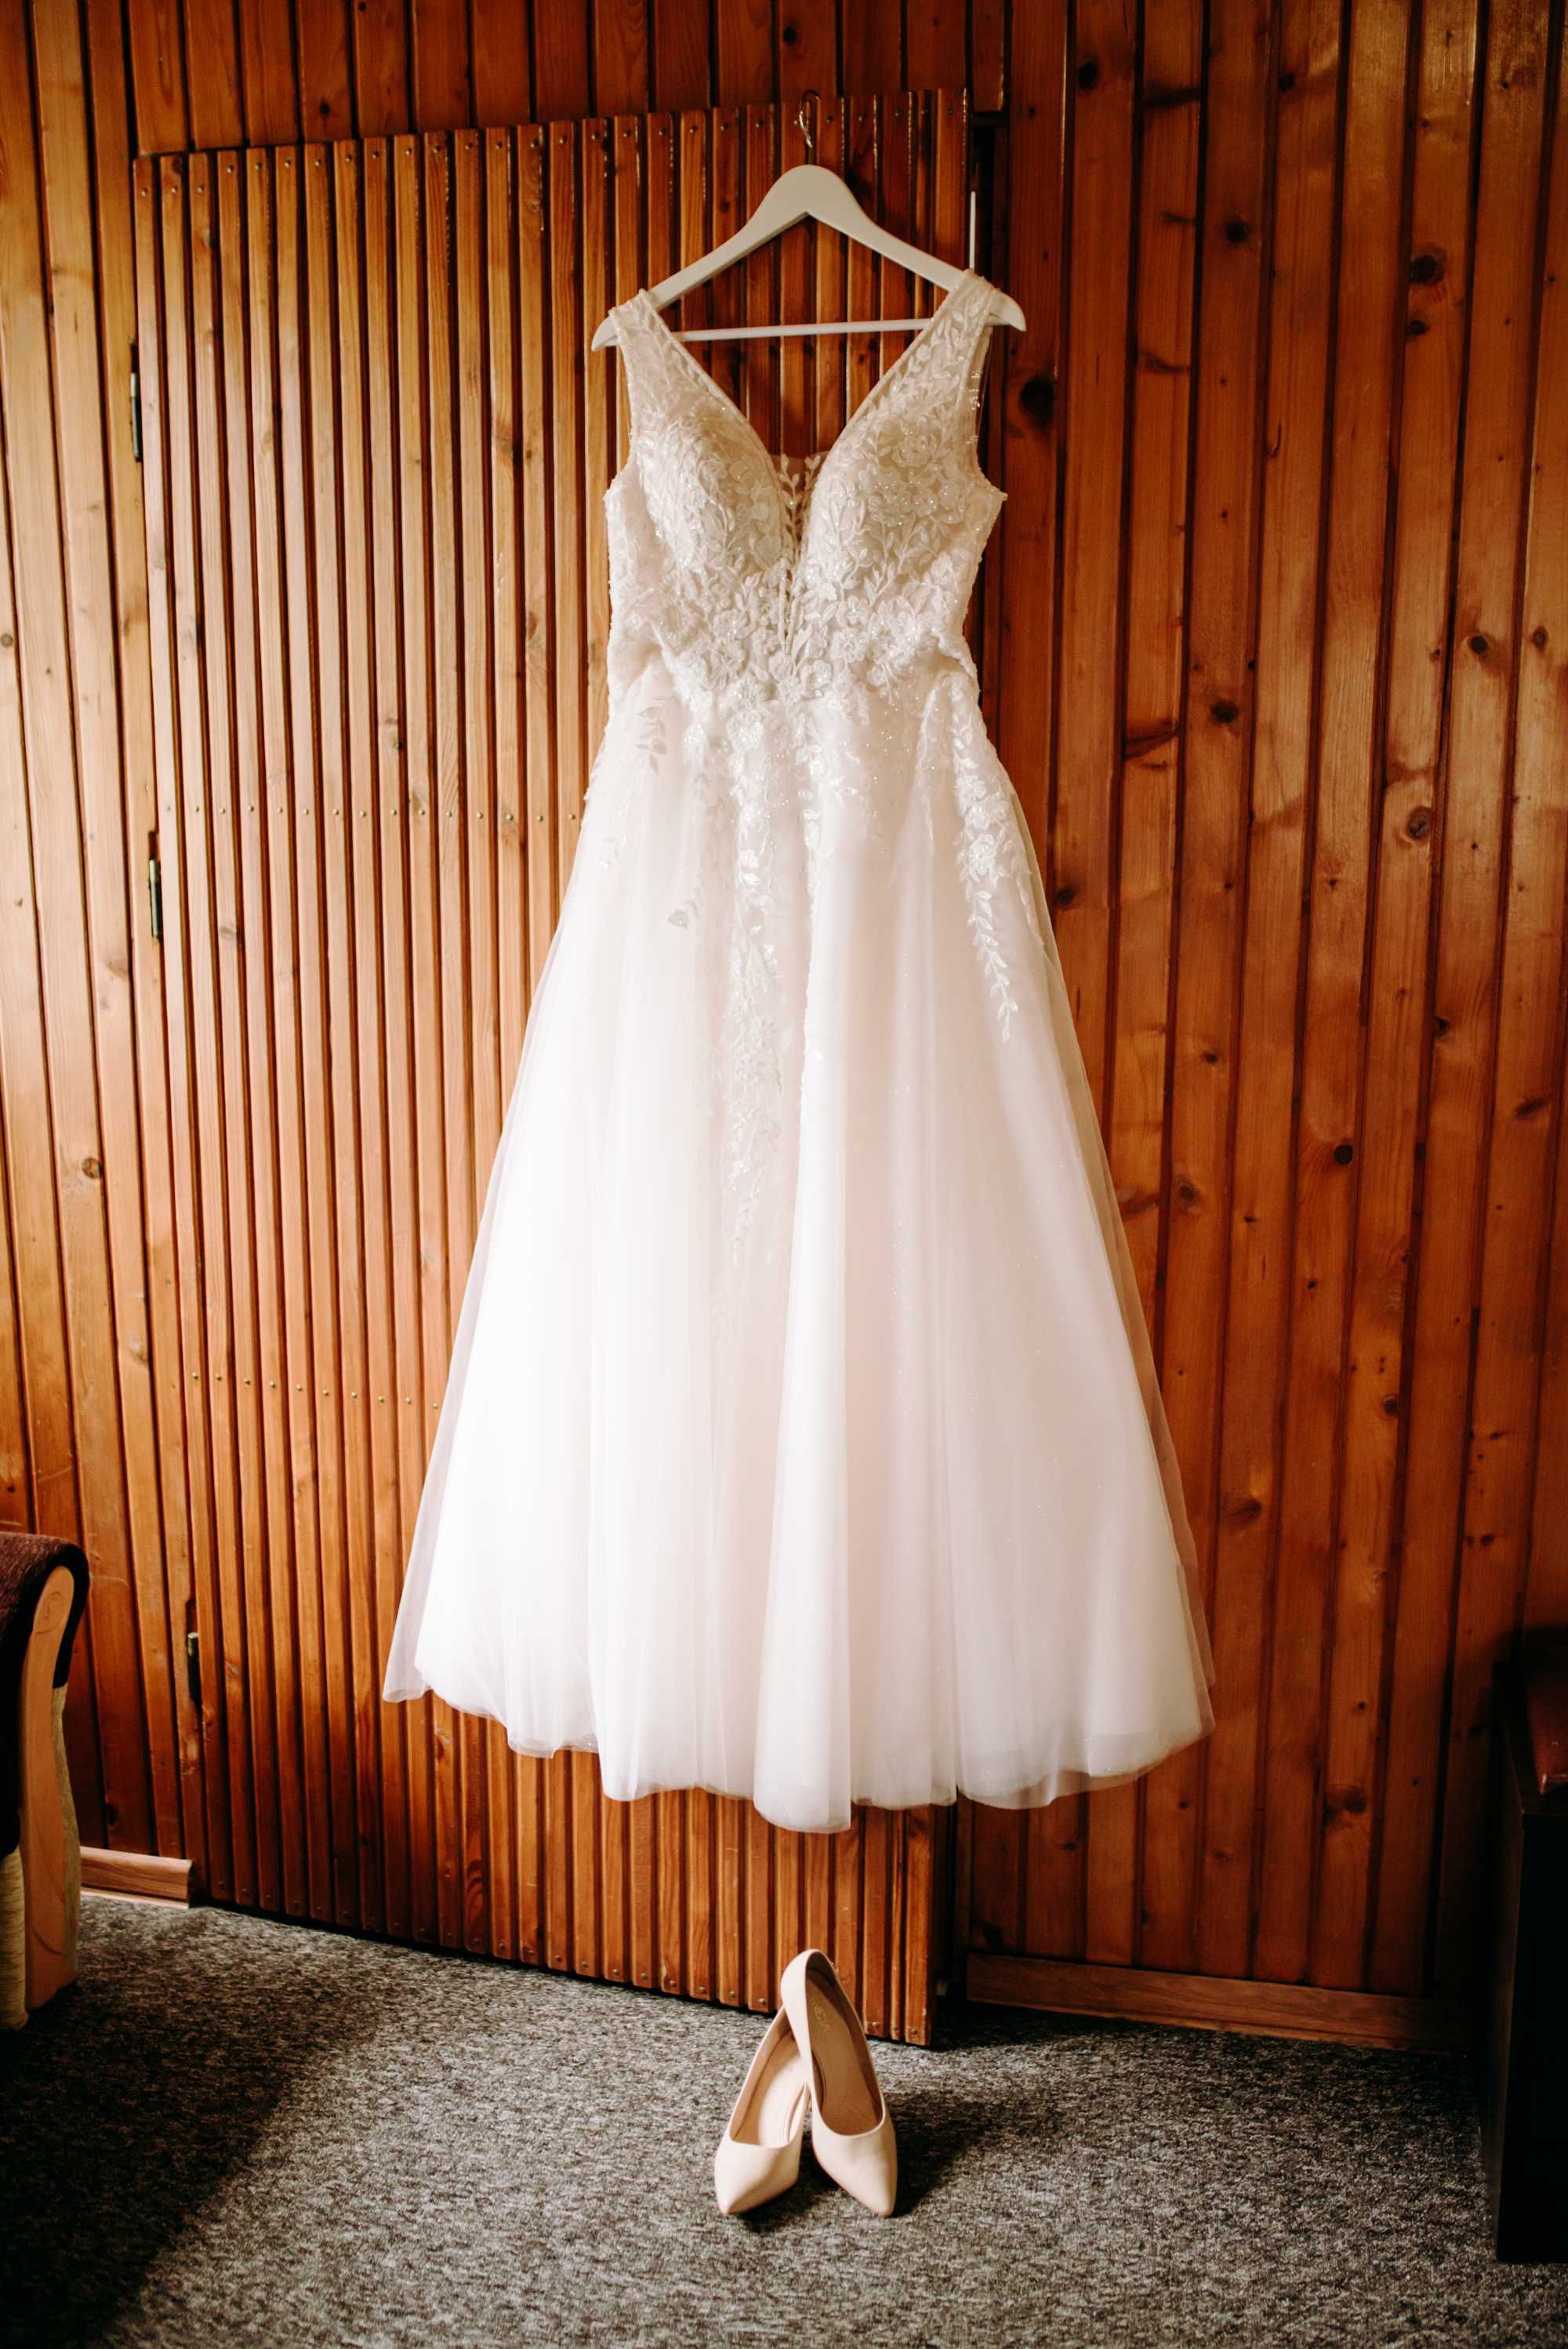 Suknia ślubna (z kołem i welonem) roz. 40, wzrost 172 cm + 7 cm obcas